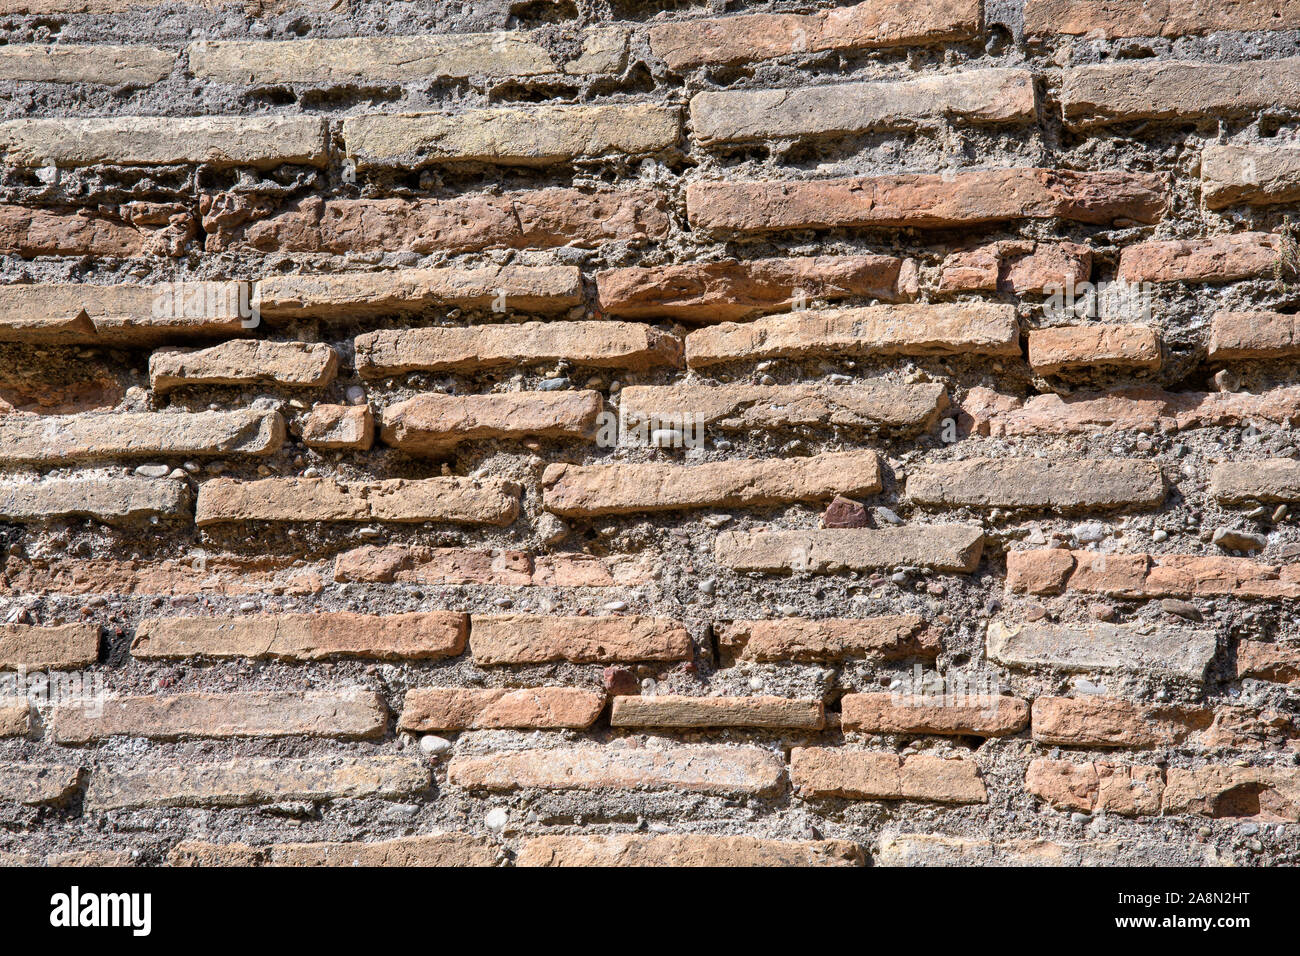 Ein Fragment der alten Mauer aus Stein von einem der Tempel der griechischen Antike Olympia. Antikes Mauerwerk. Stockfoto